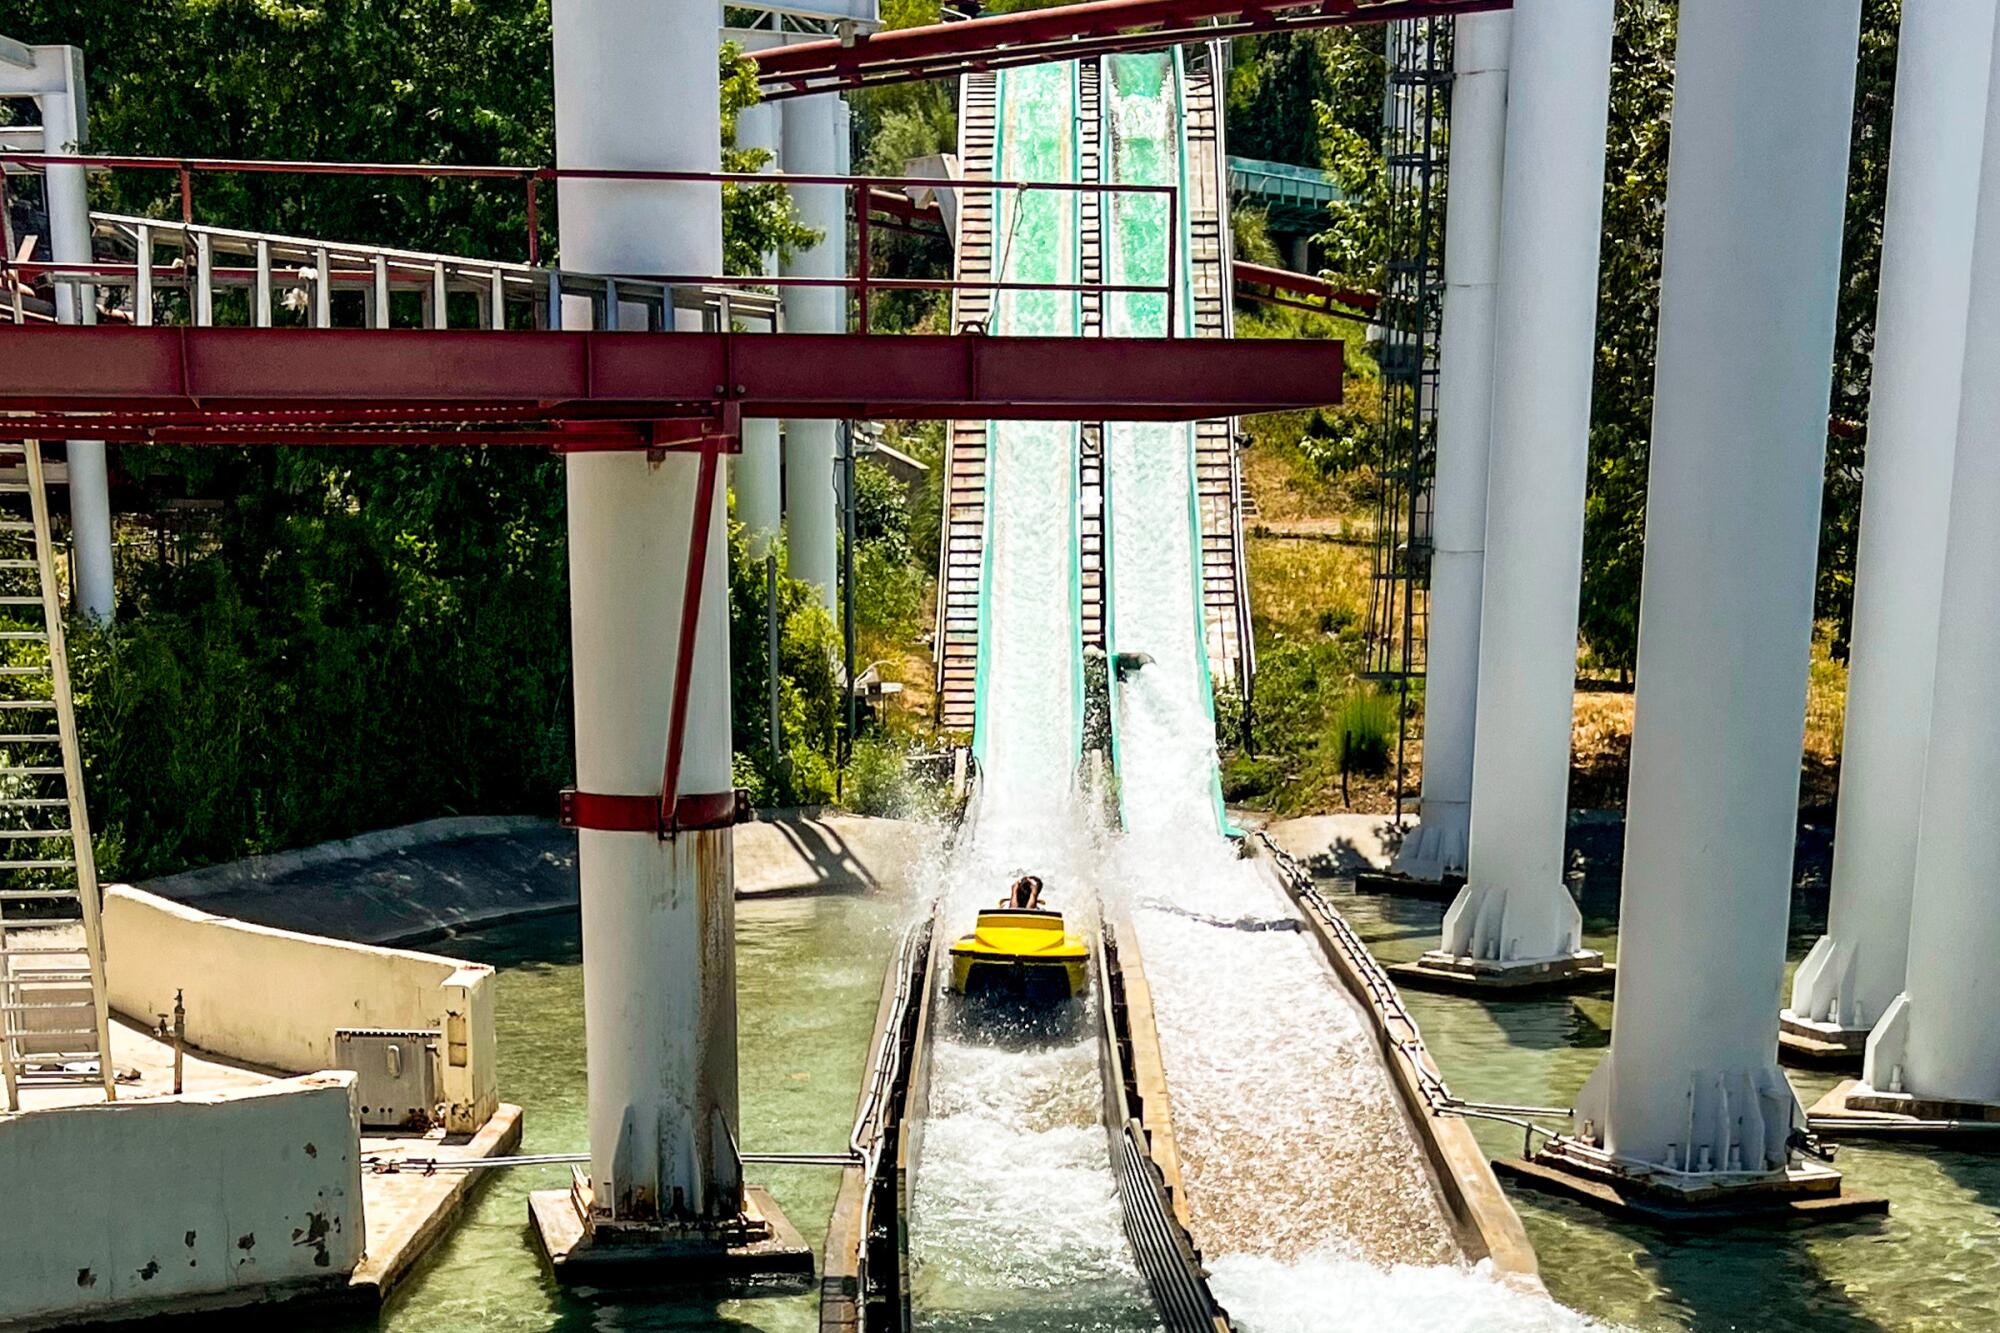 A roller coaster's track runs through water